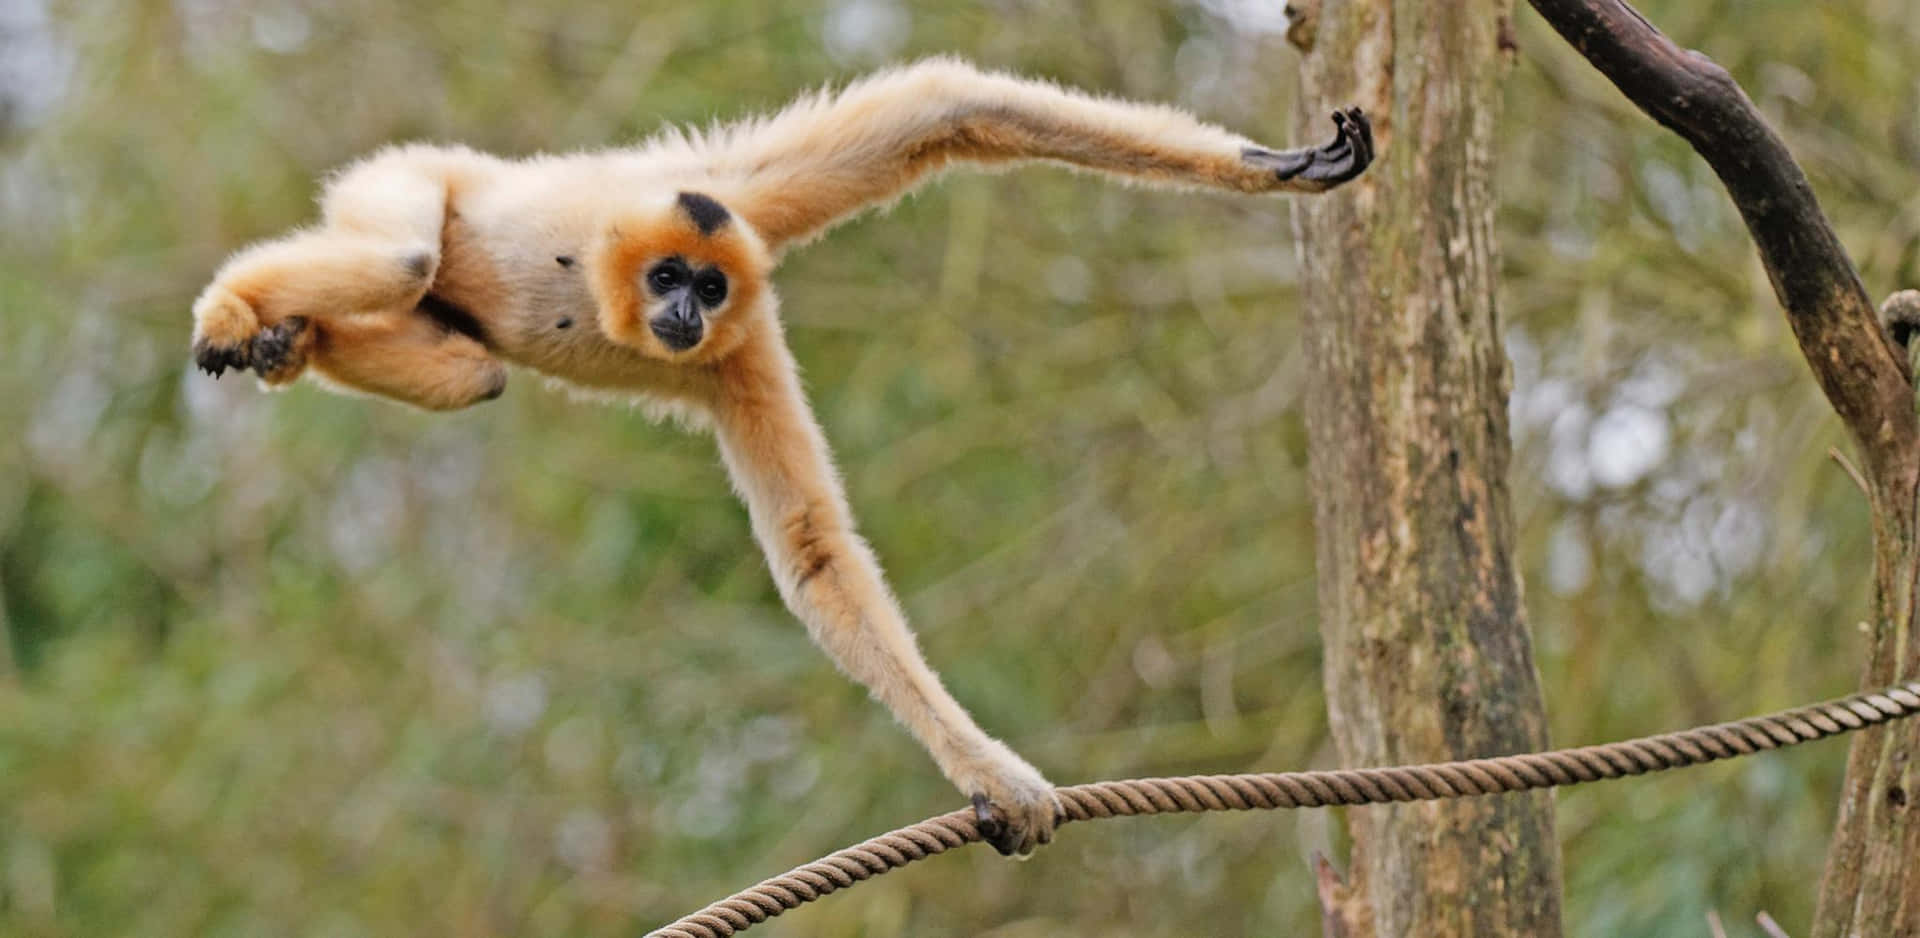 Orange Gibbon Wild Animal Background